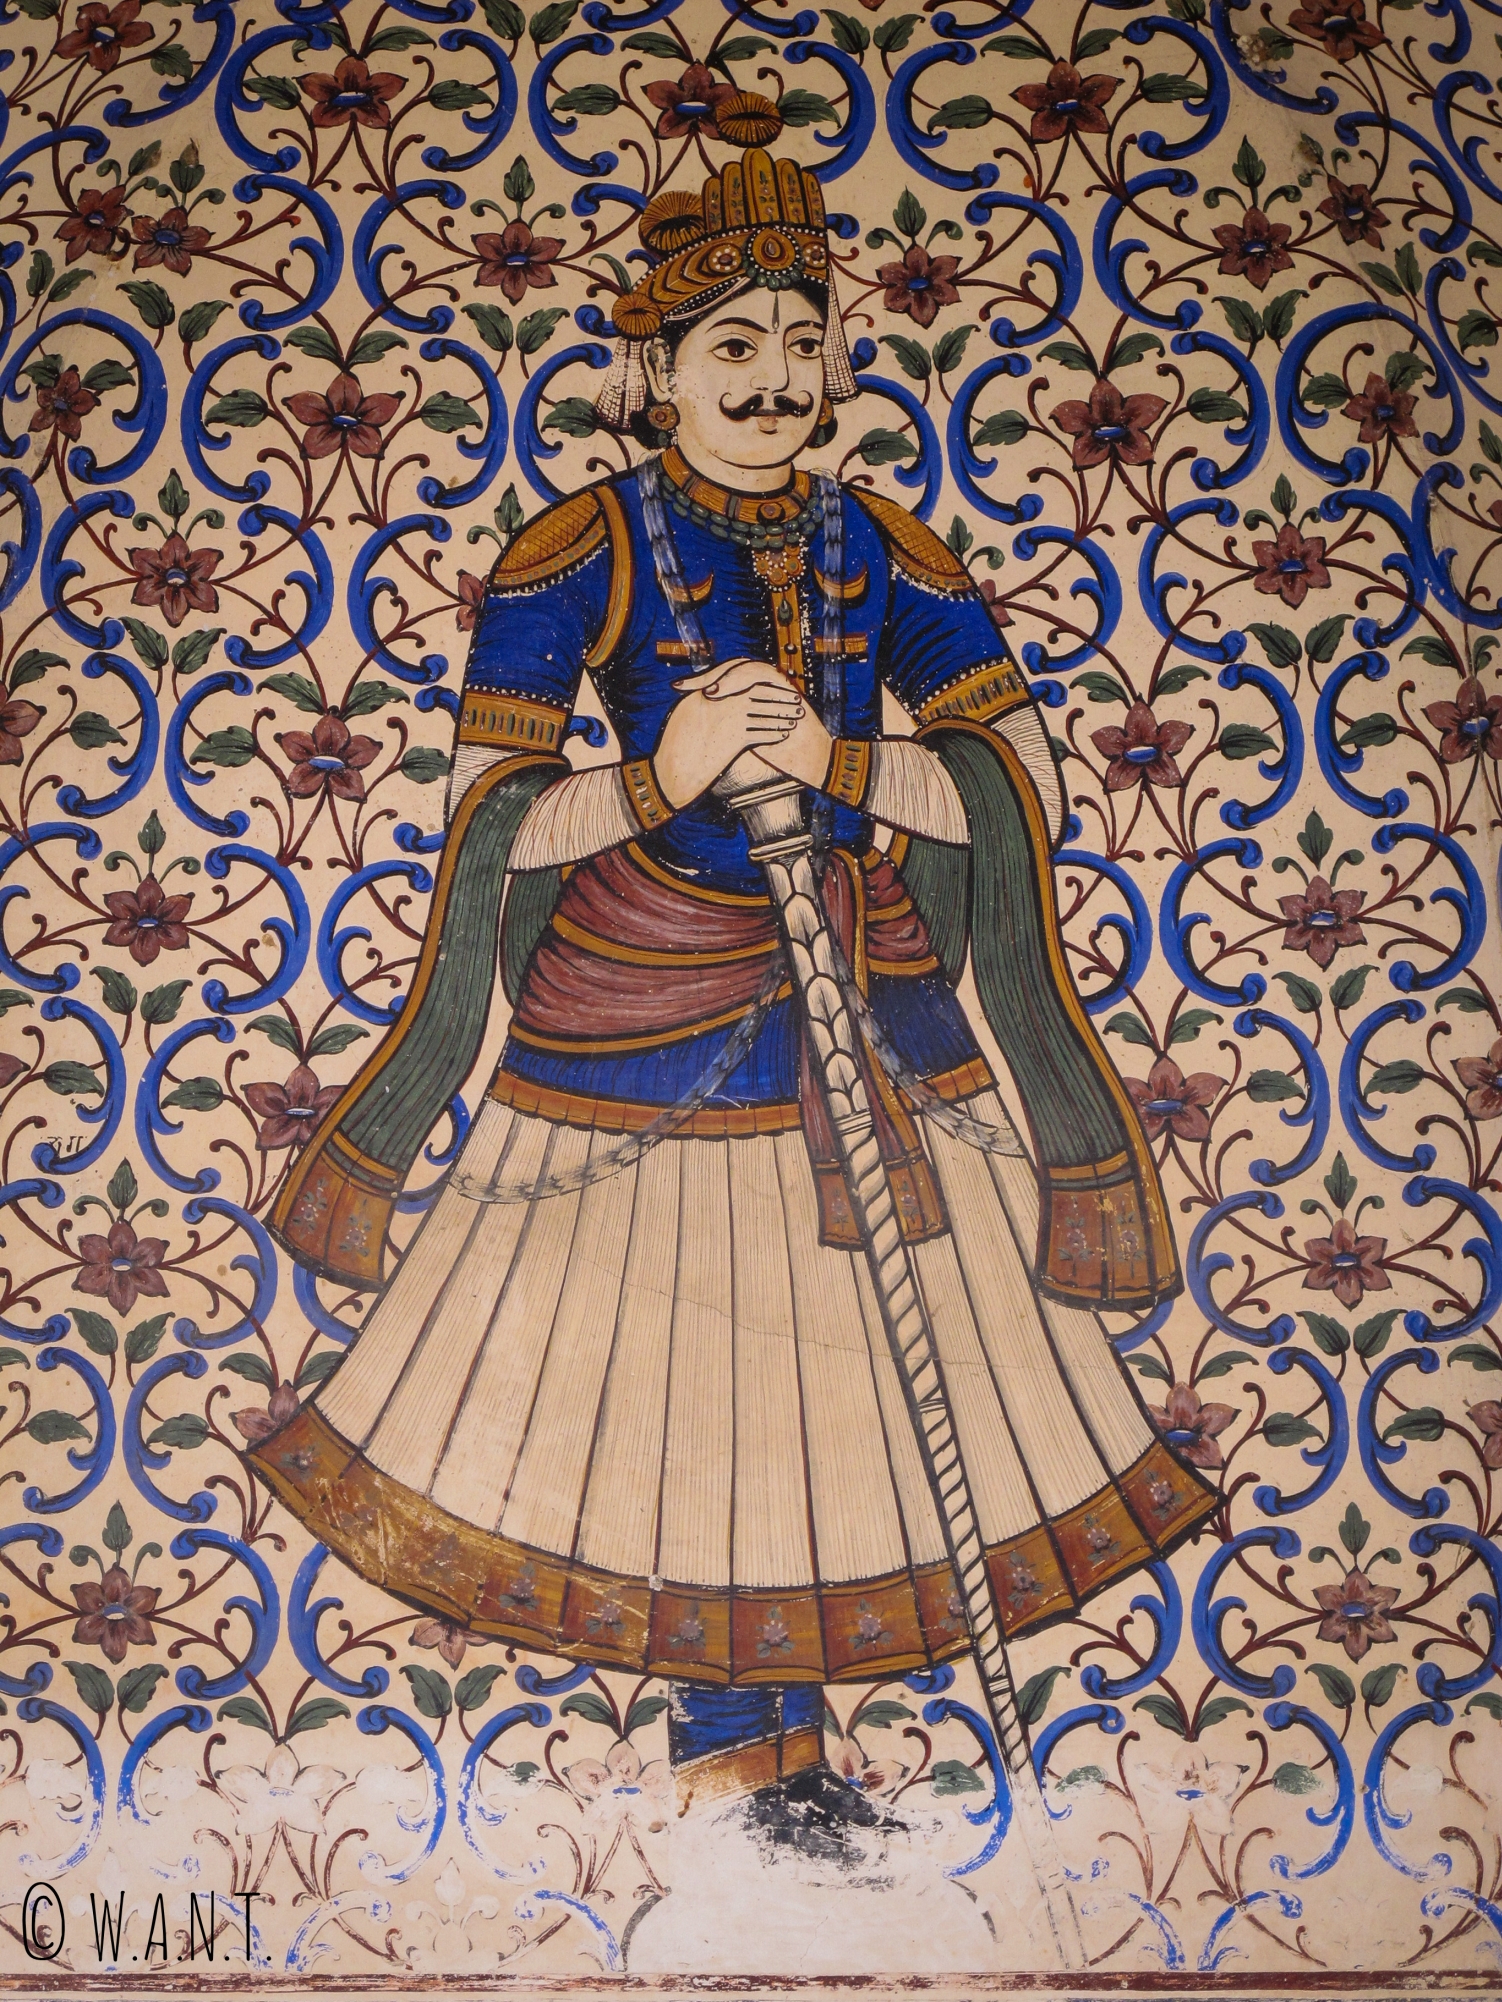 L'entrée du City Palace de Jaipur est ornée de mozaïques diverses et colorées